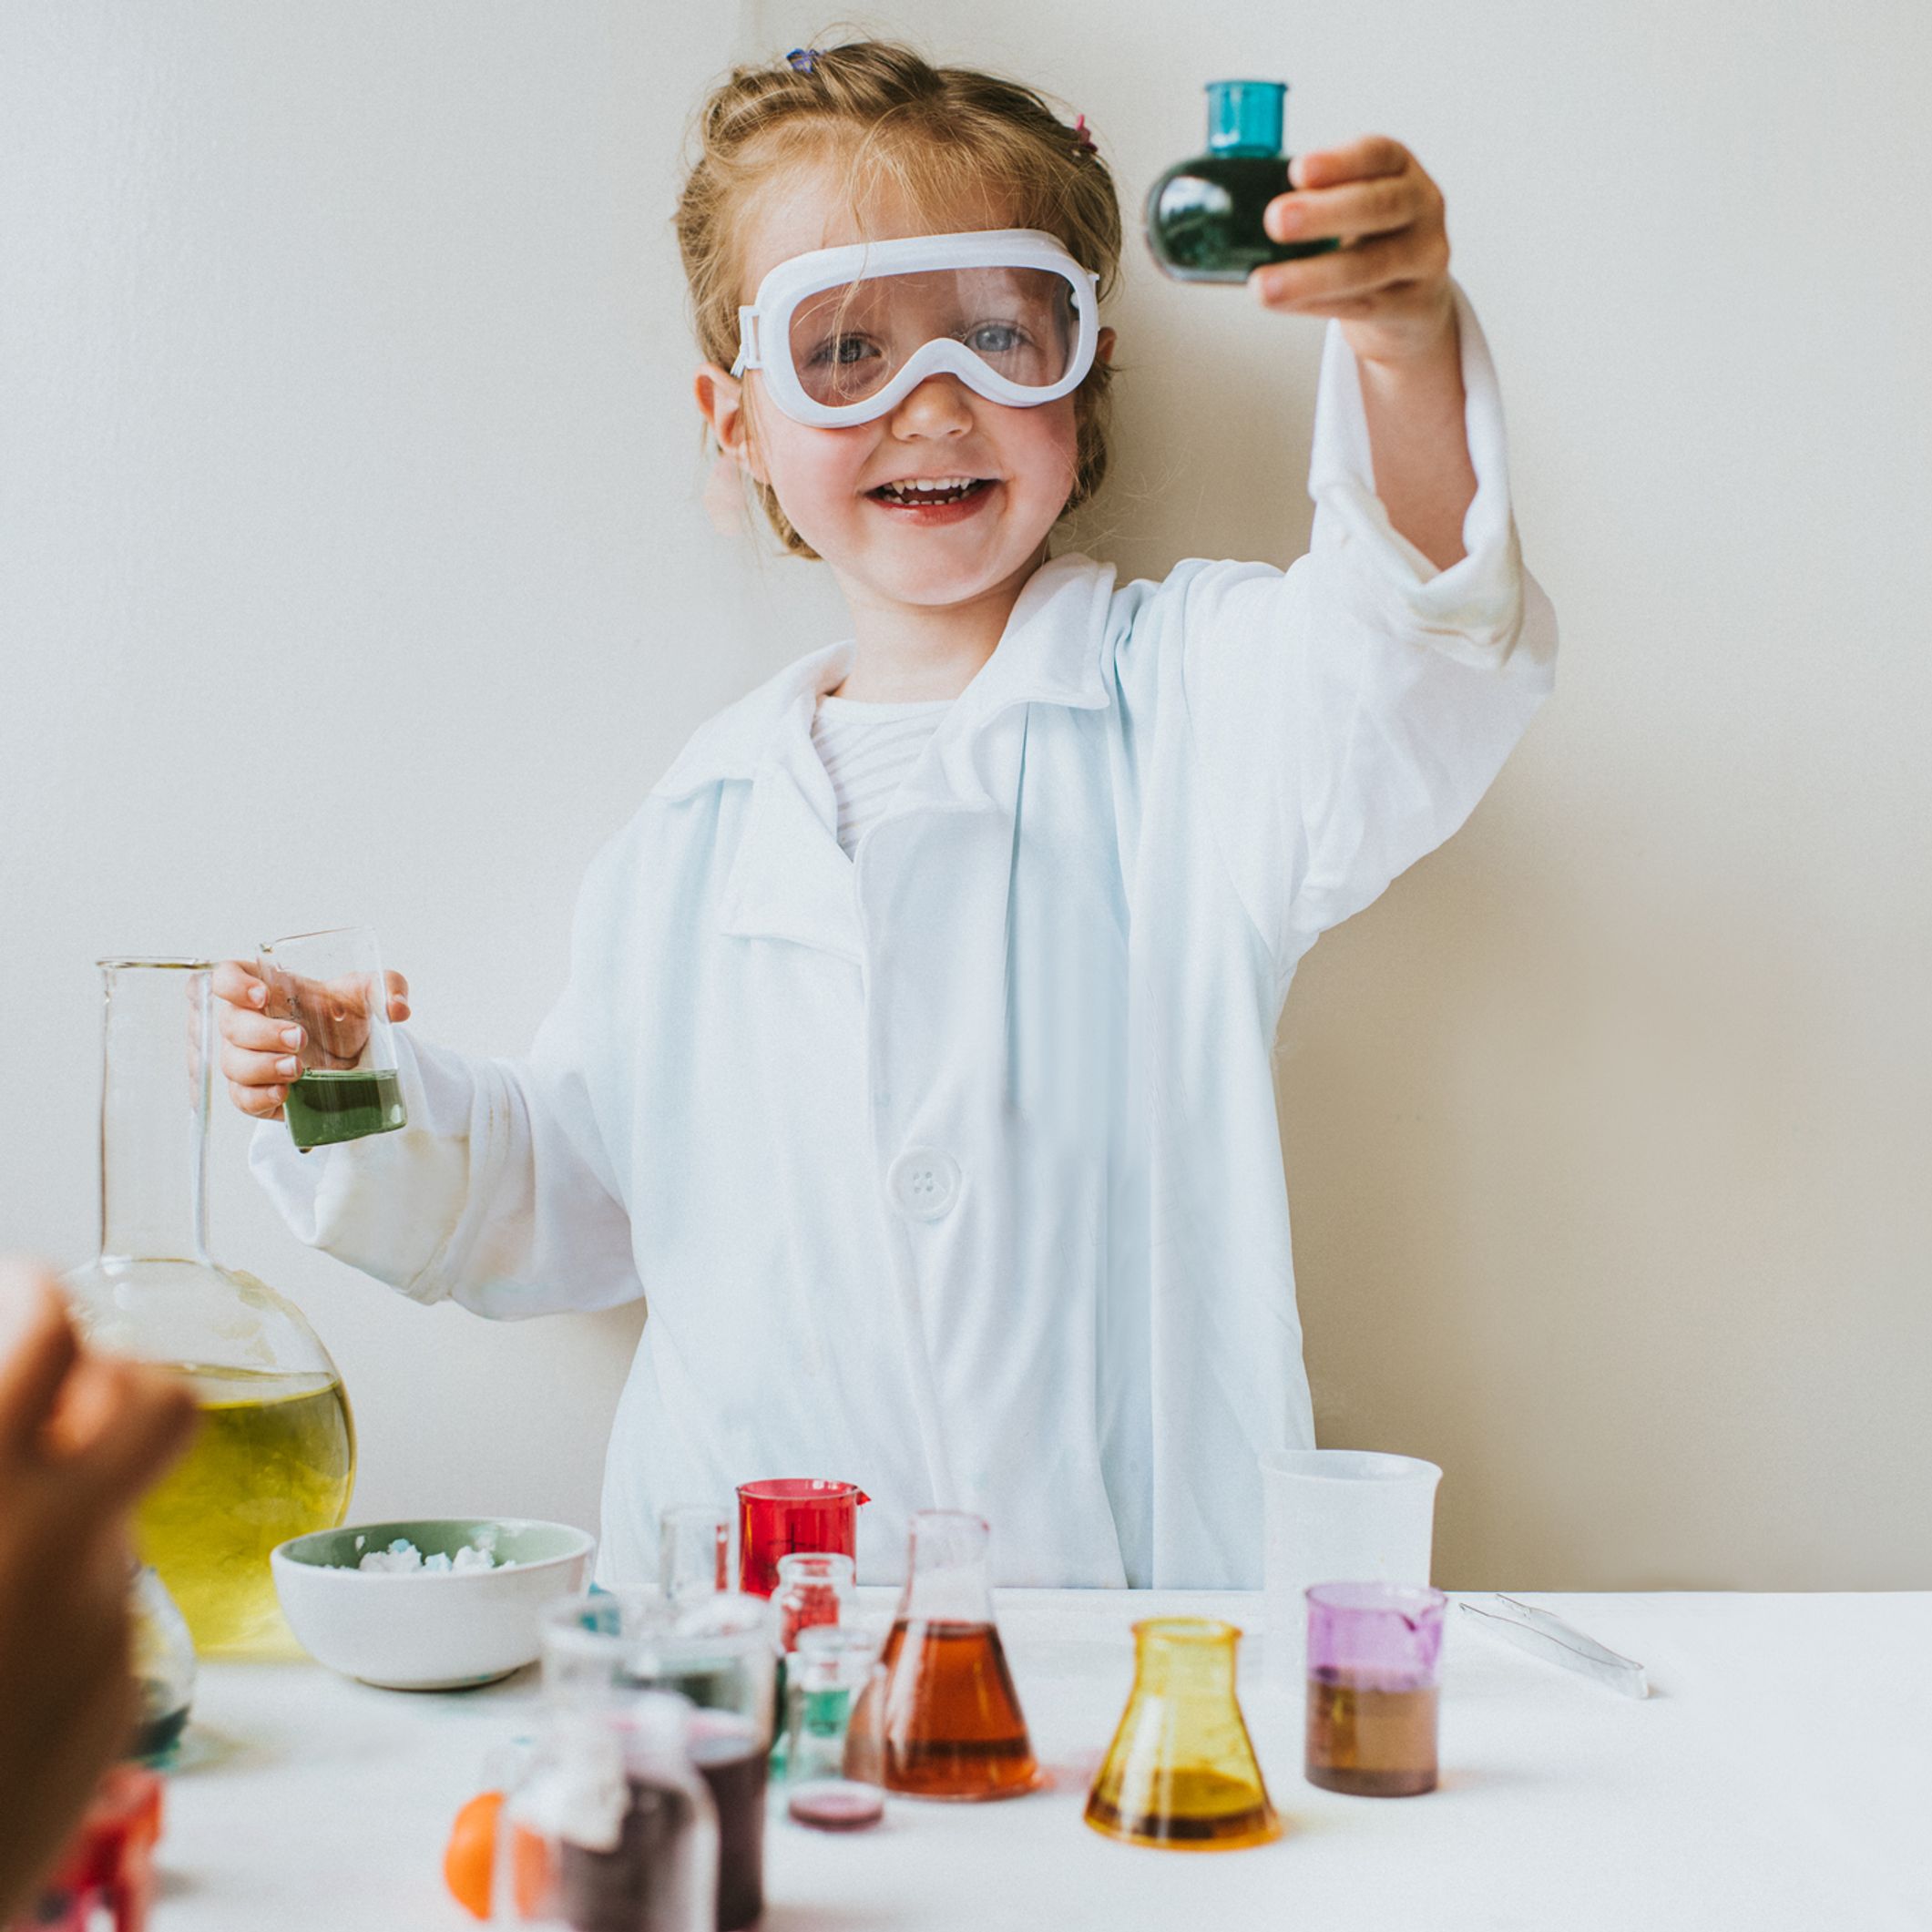 5 expériences scientifiques simples et gratuites : faites découvrir à votre  enfant la physique et chimie